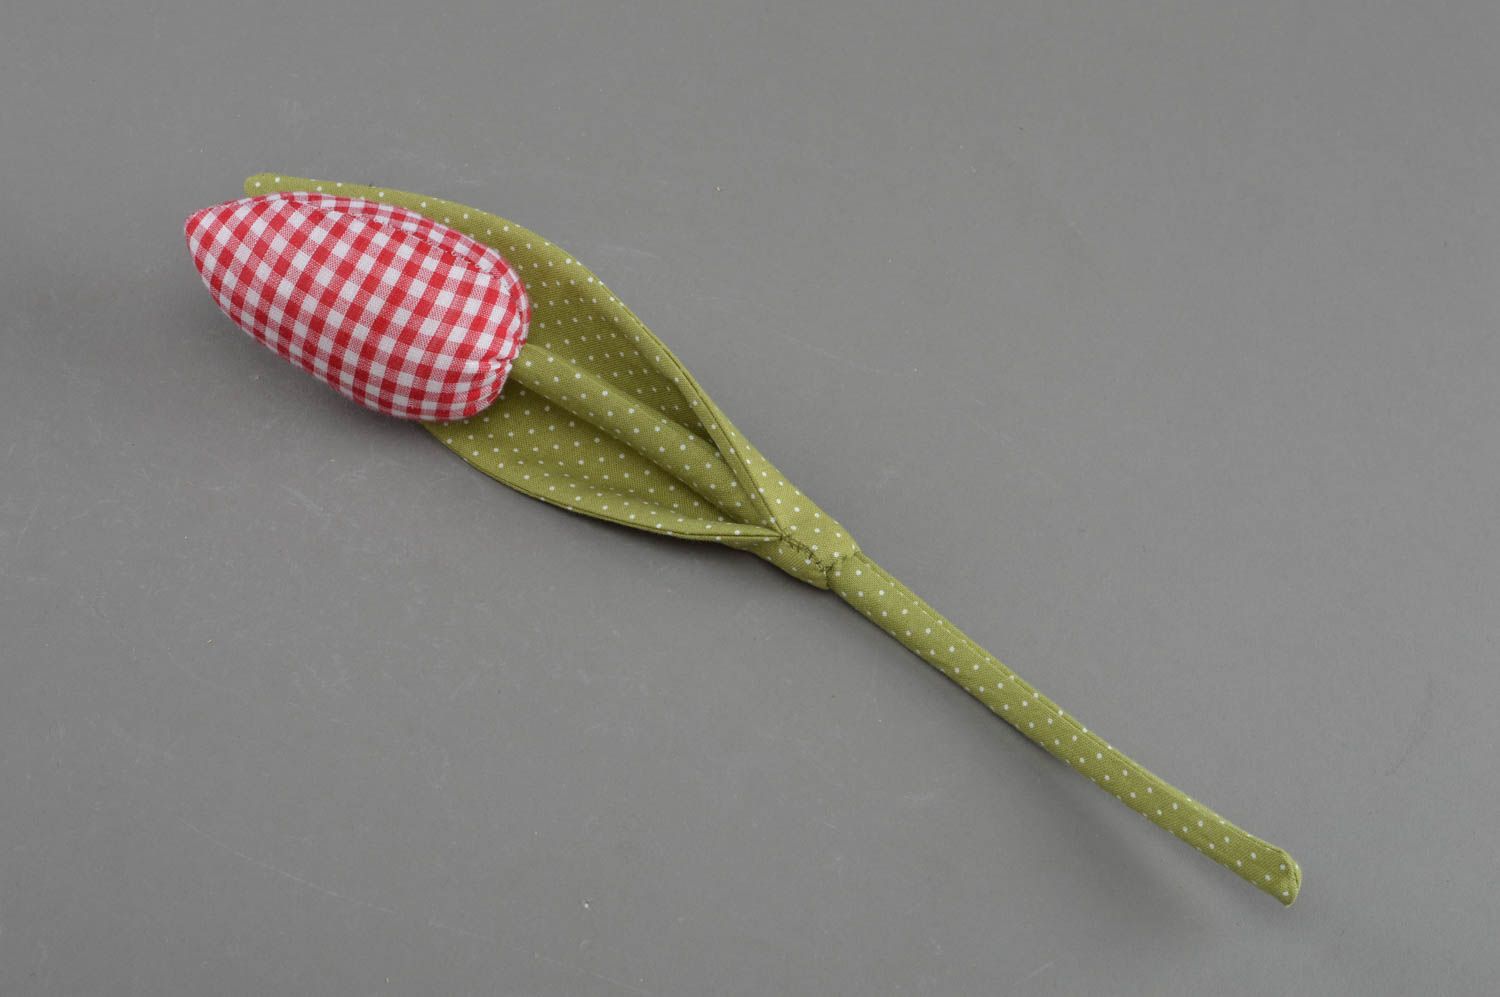 Мягкая игрушка цветок из ткани в клеточку на длинном стебле красивый хэнд мейд фото 1